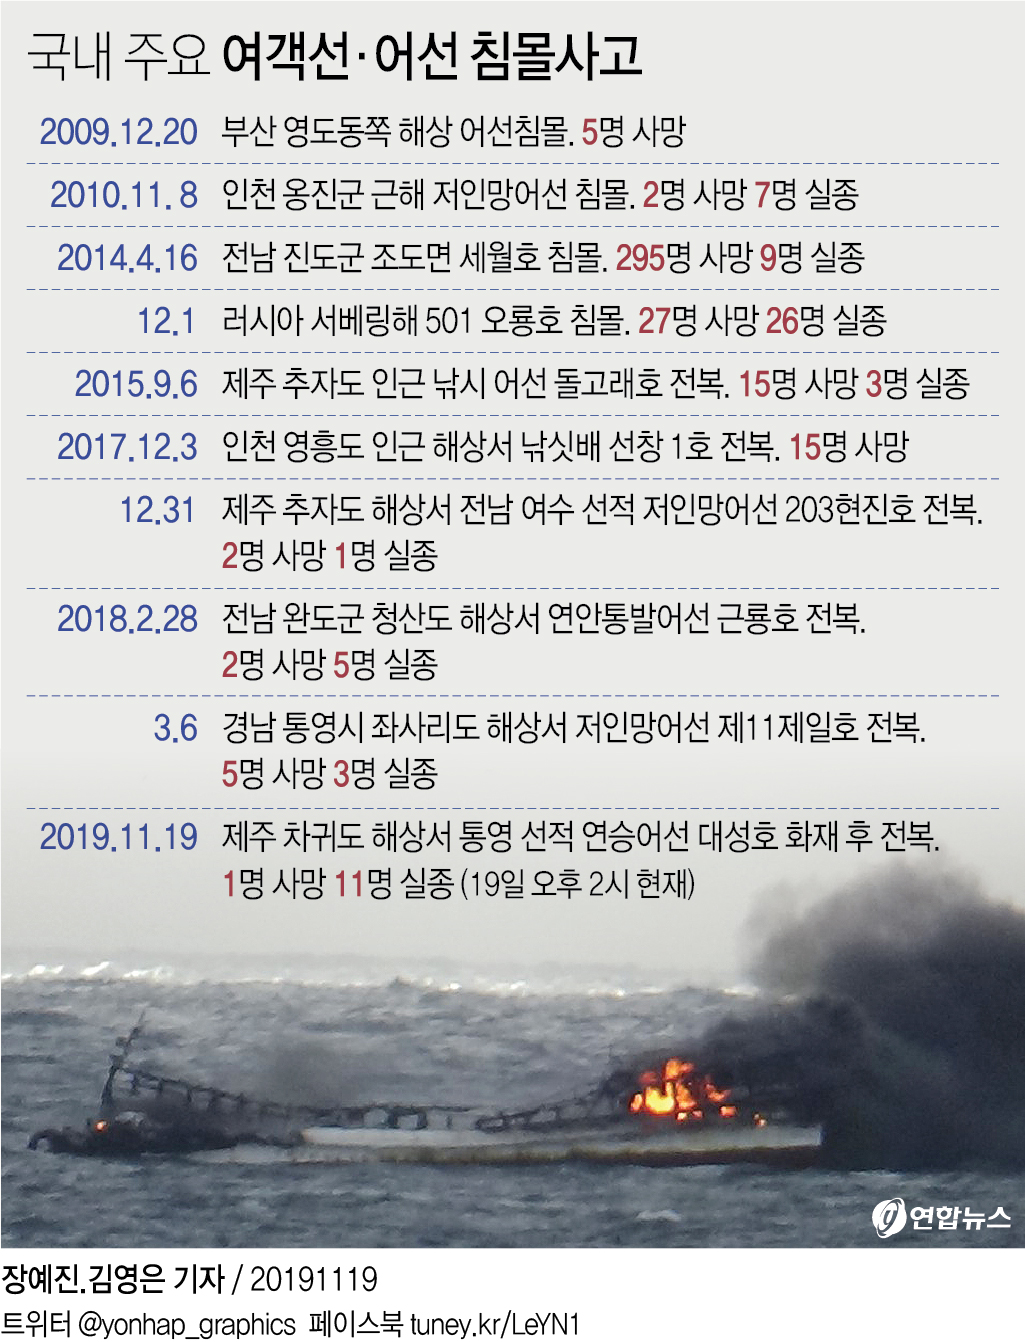 [그래픽] 국내 주요 여객선·어선 침몰사고